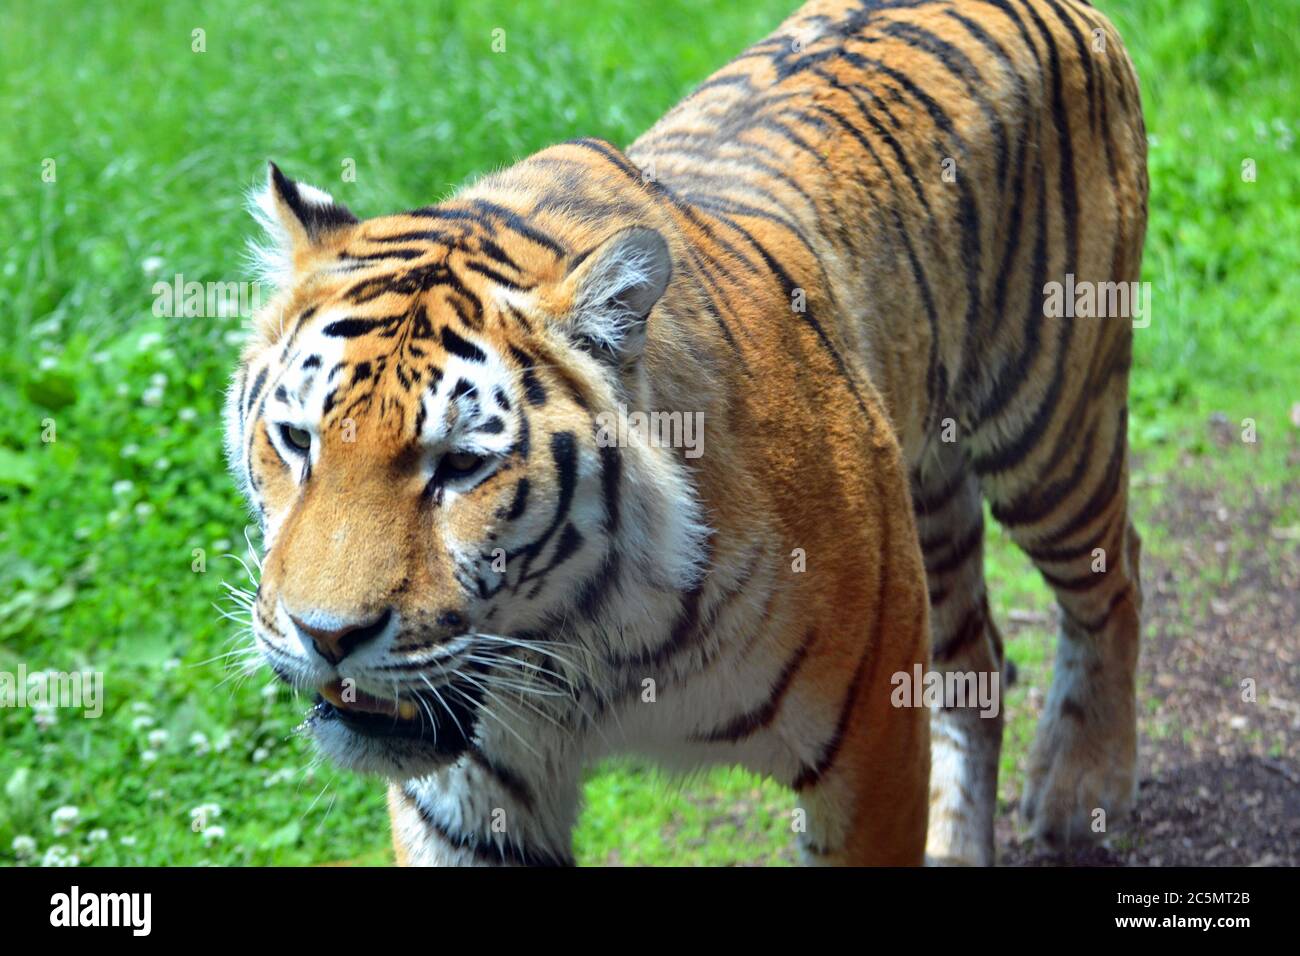 Amur Tiger at Banham Zoo, Banham, Norfolk, England, UK Stock Photo